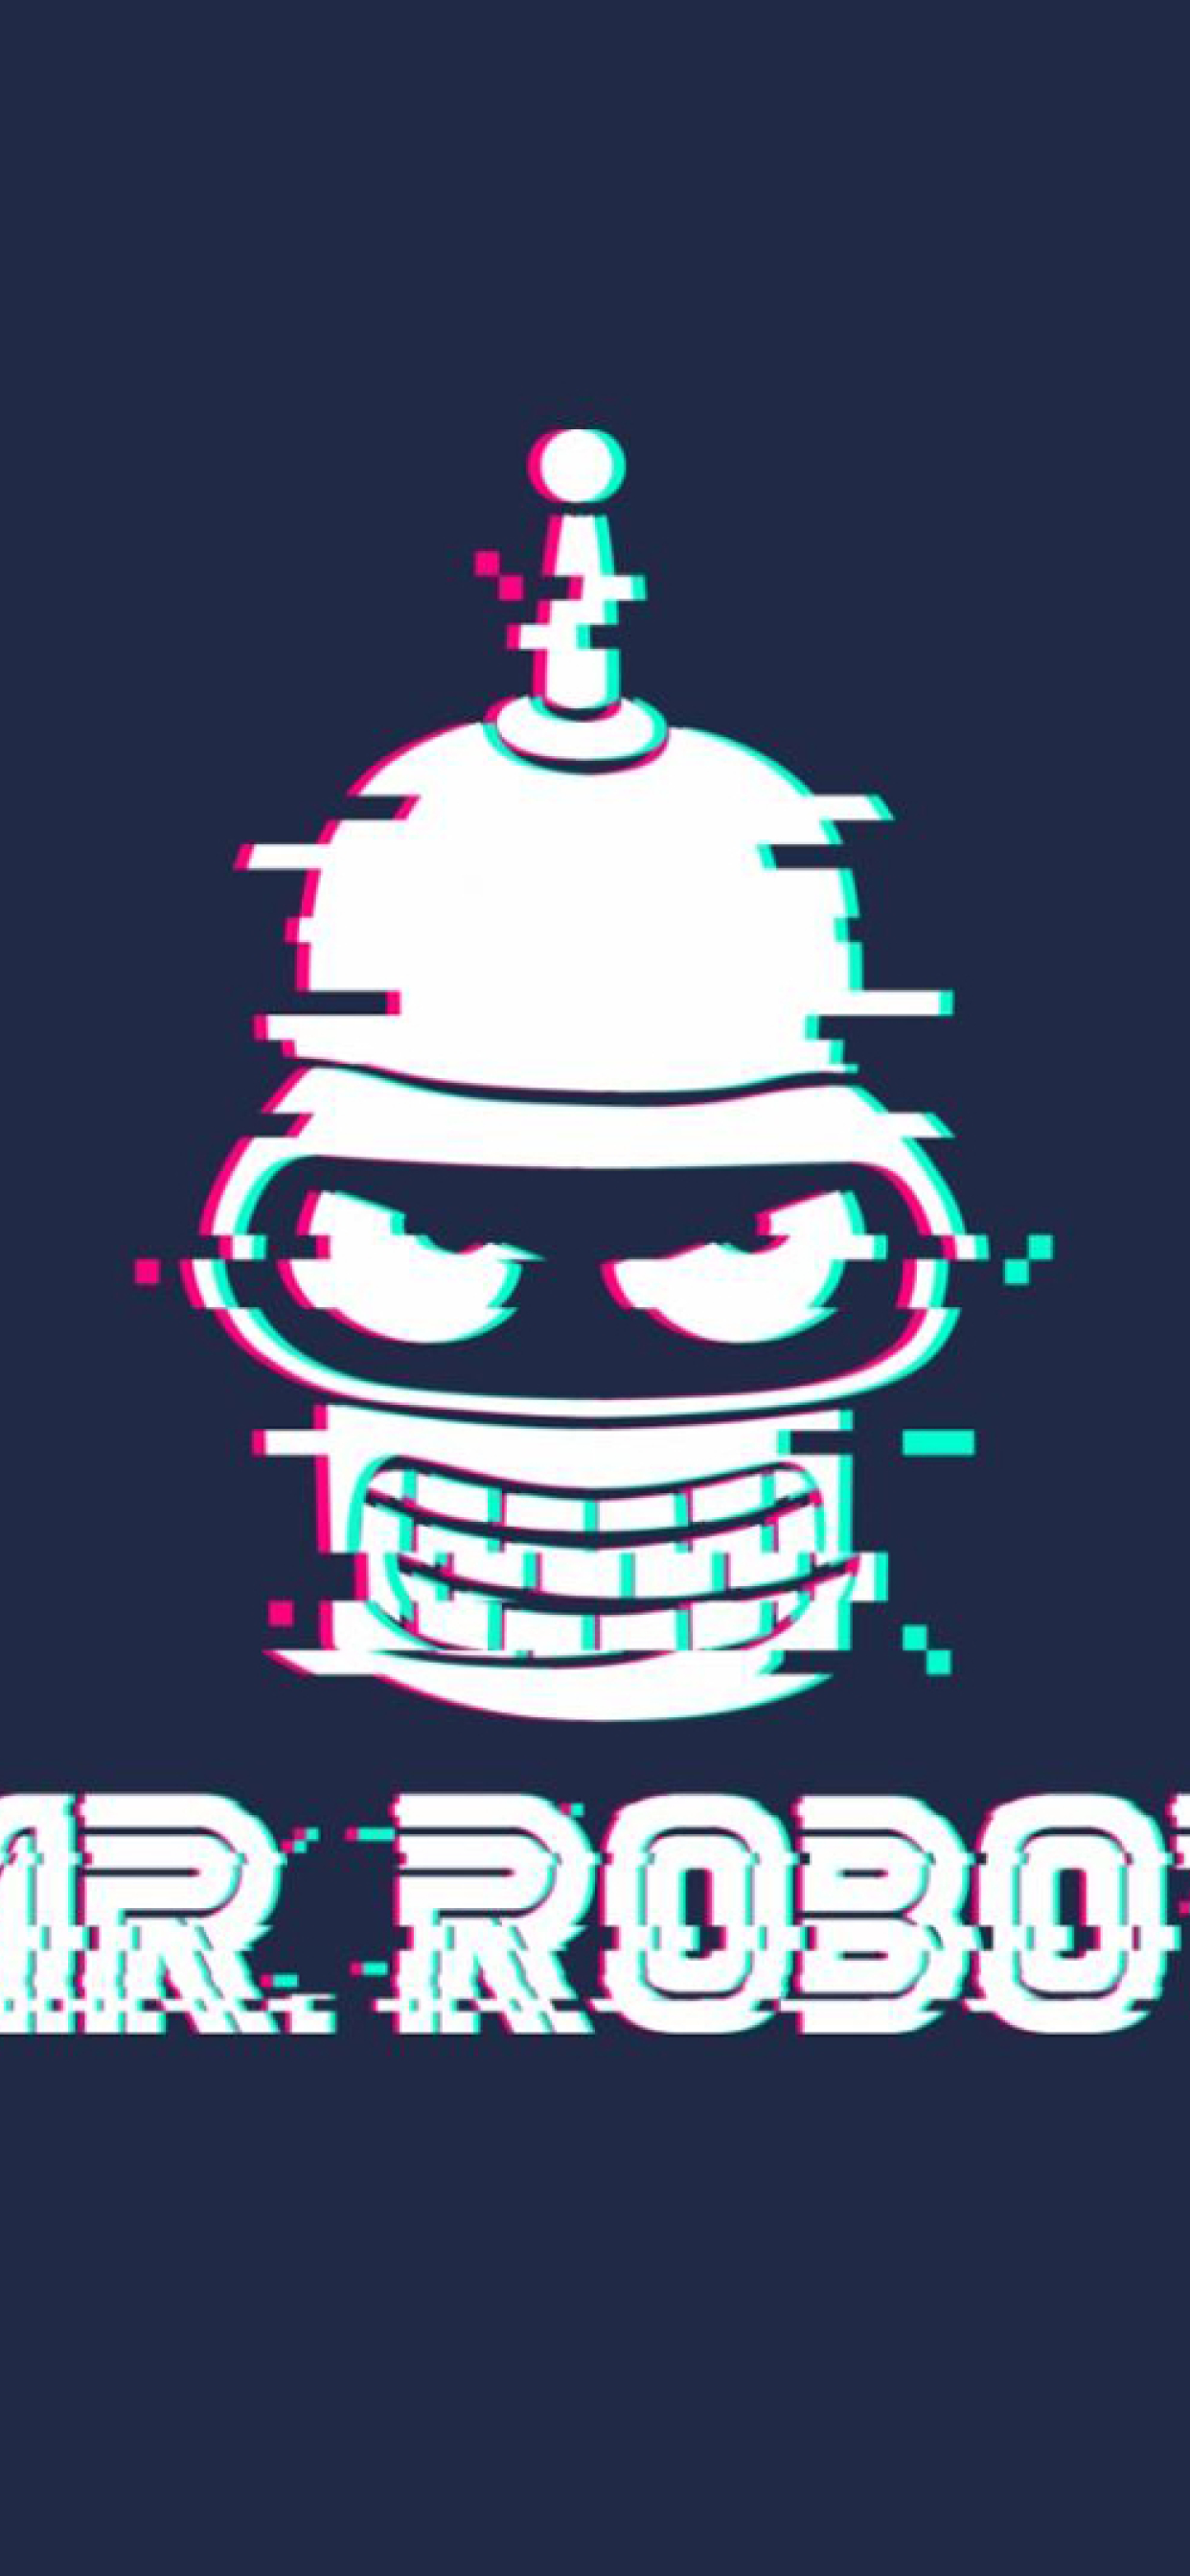 Mr Robot , HD Wallpaper & Backgrounds